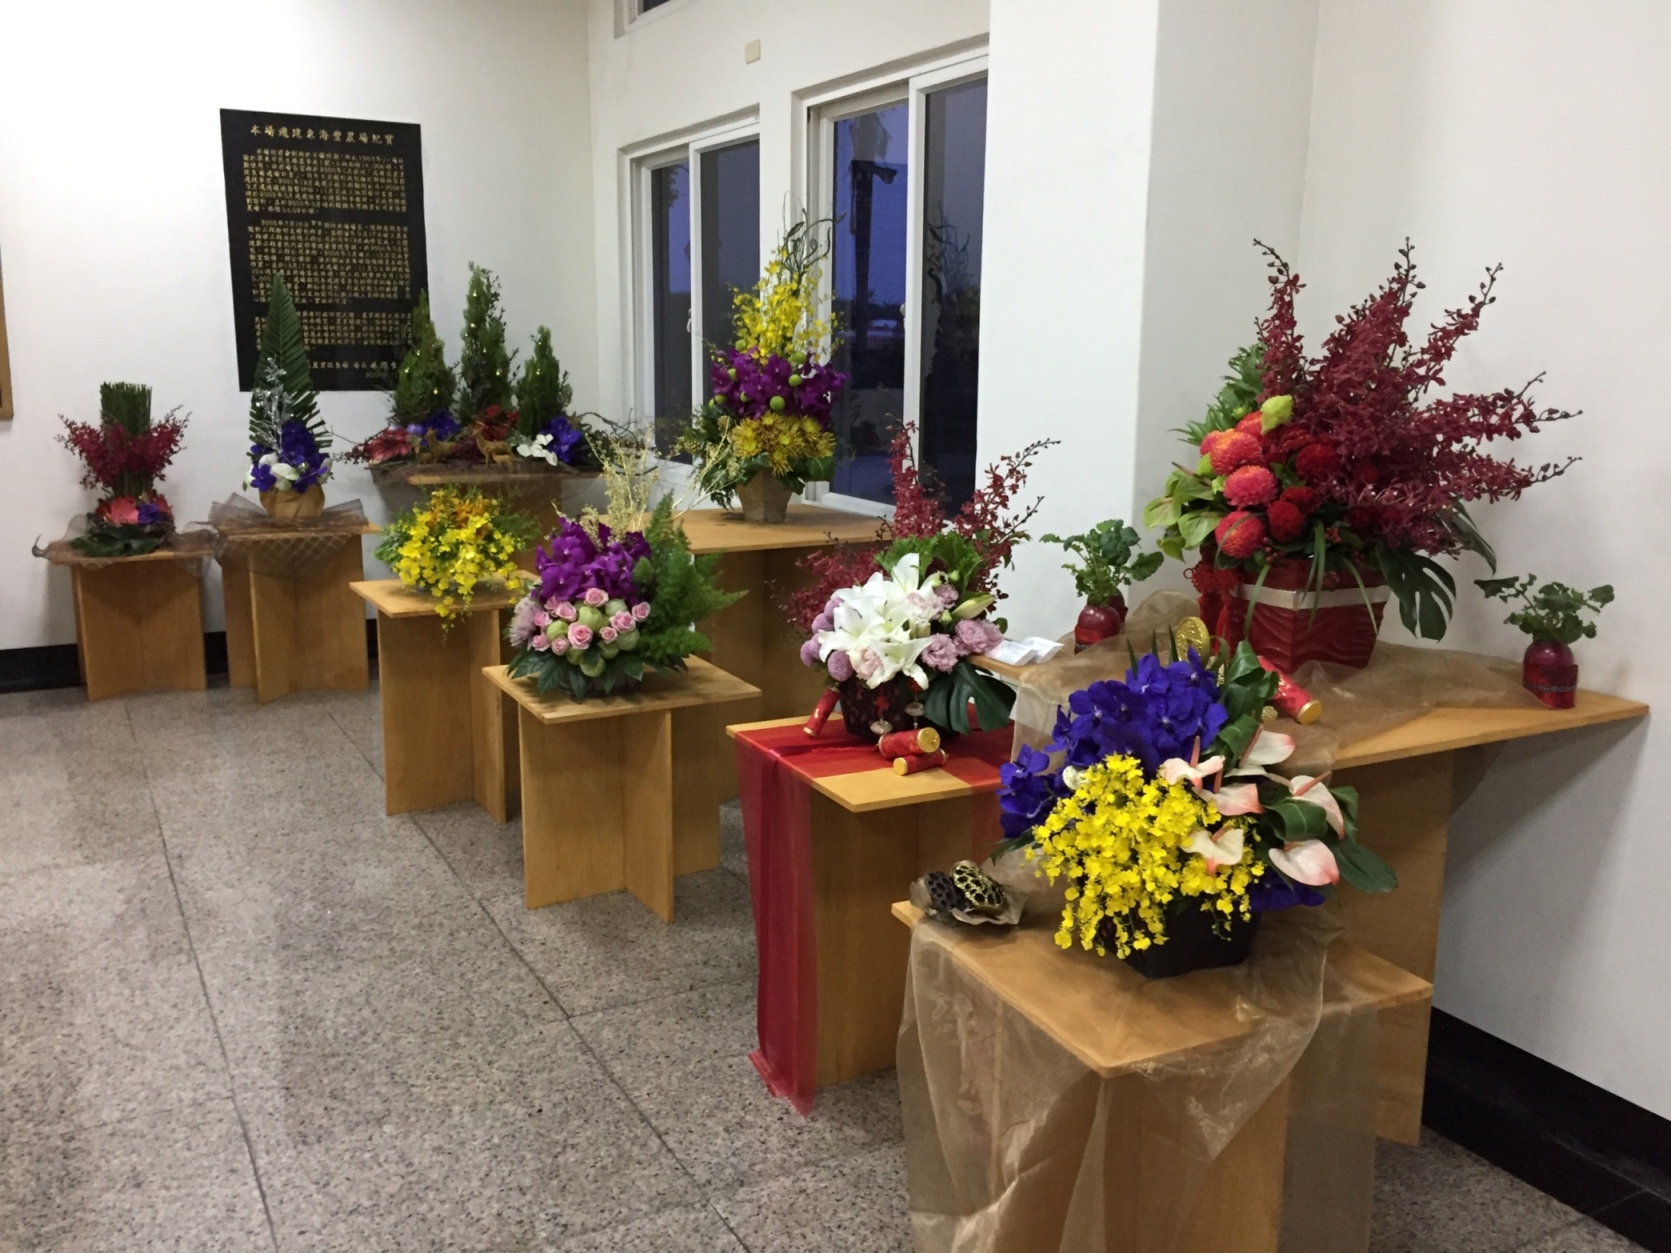 106年利用色彩鮮艷的熱帶蘭科花卉呈現多樣性的布置